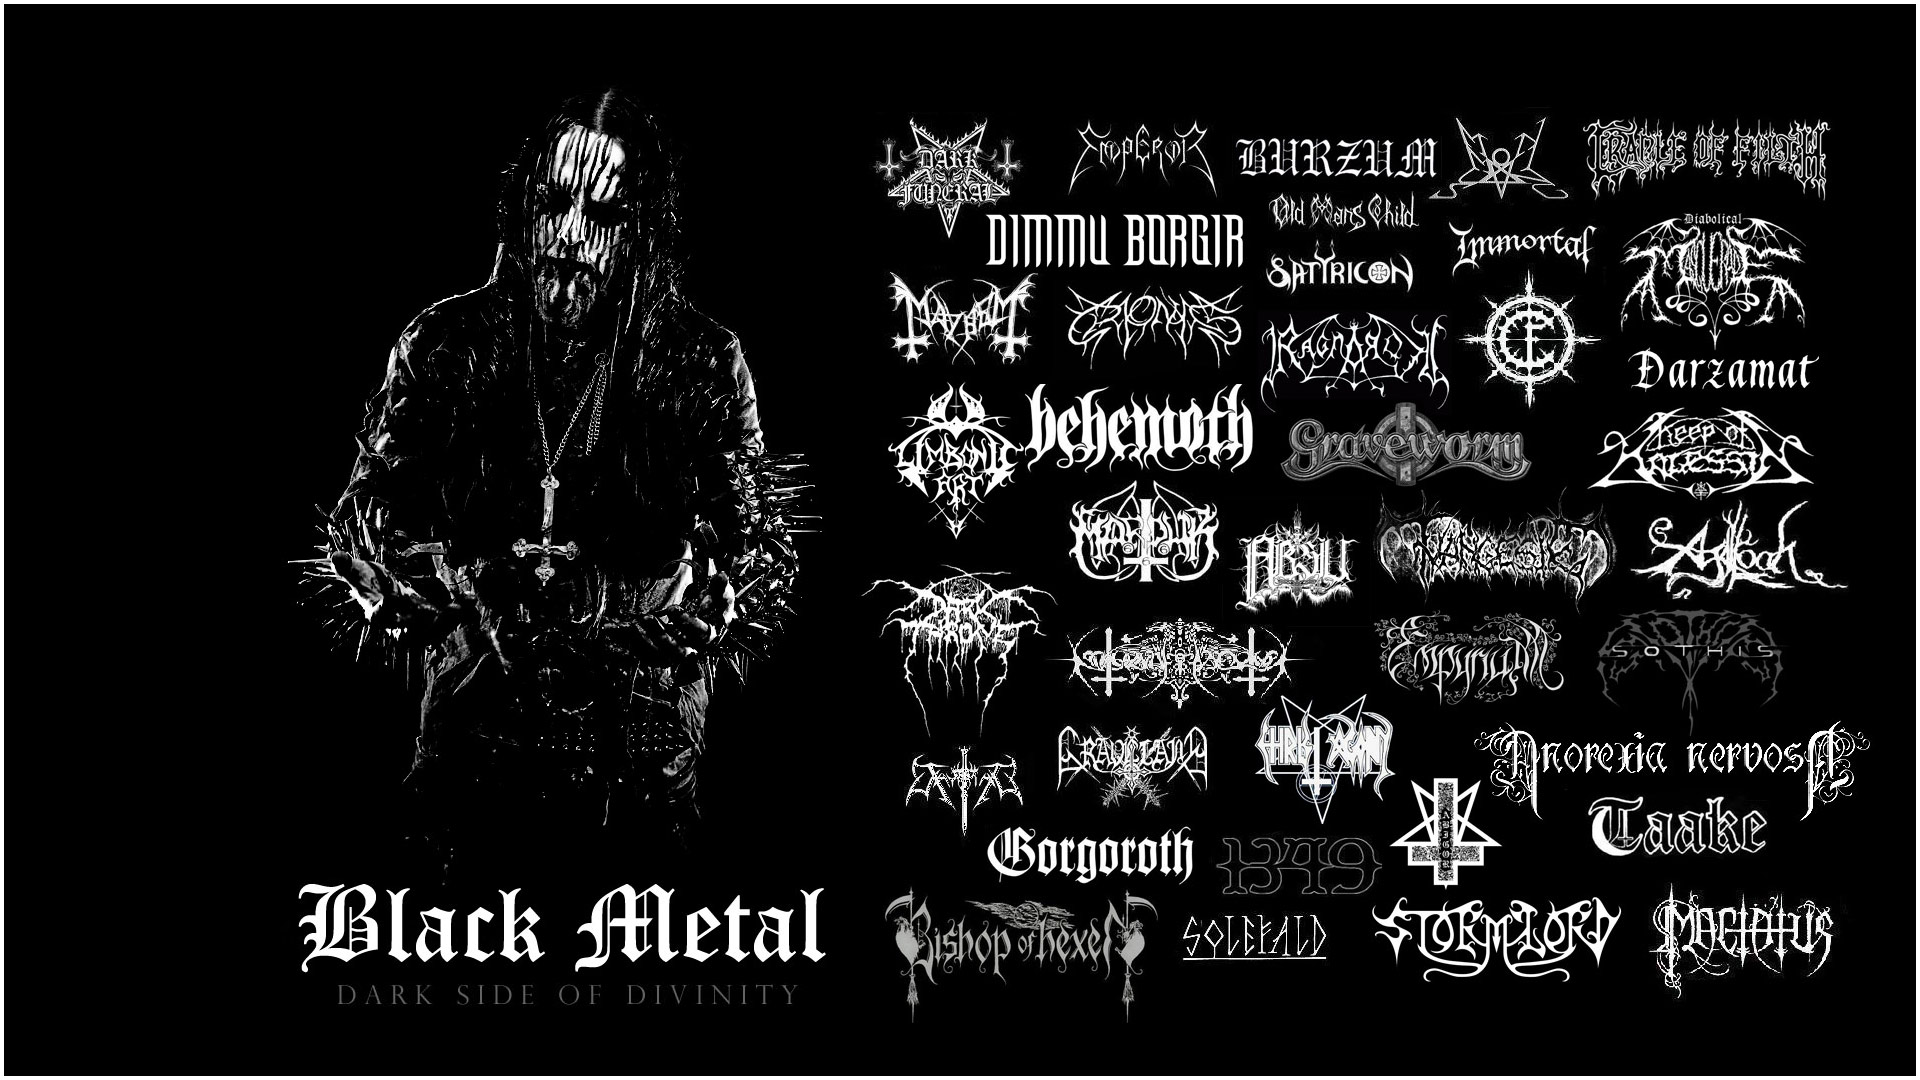 Metal Black Music Wallpaper HDw Eweb4